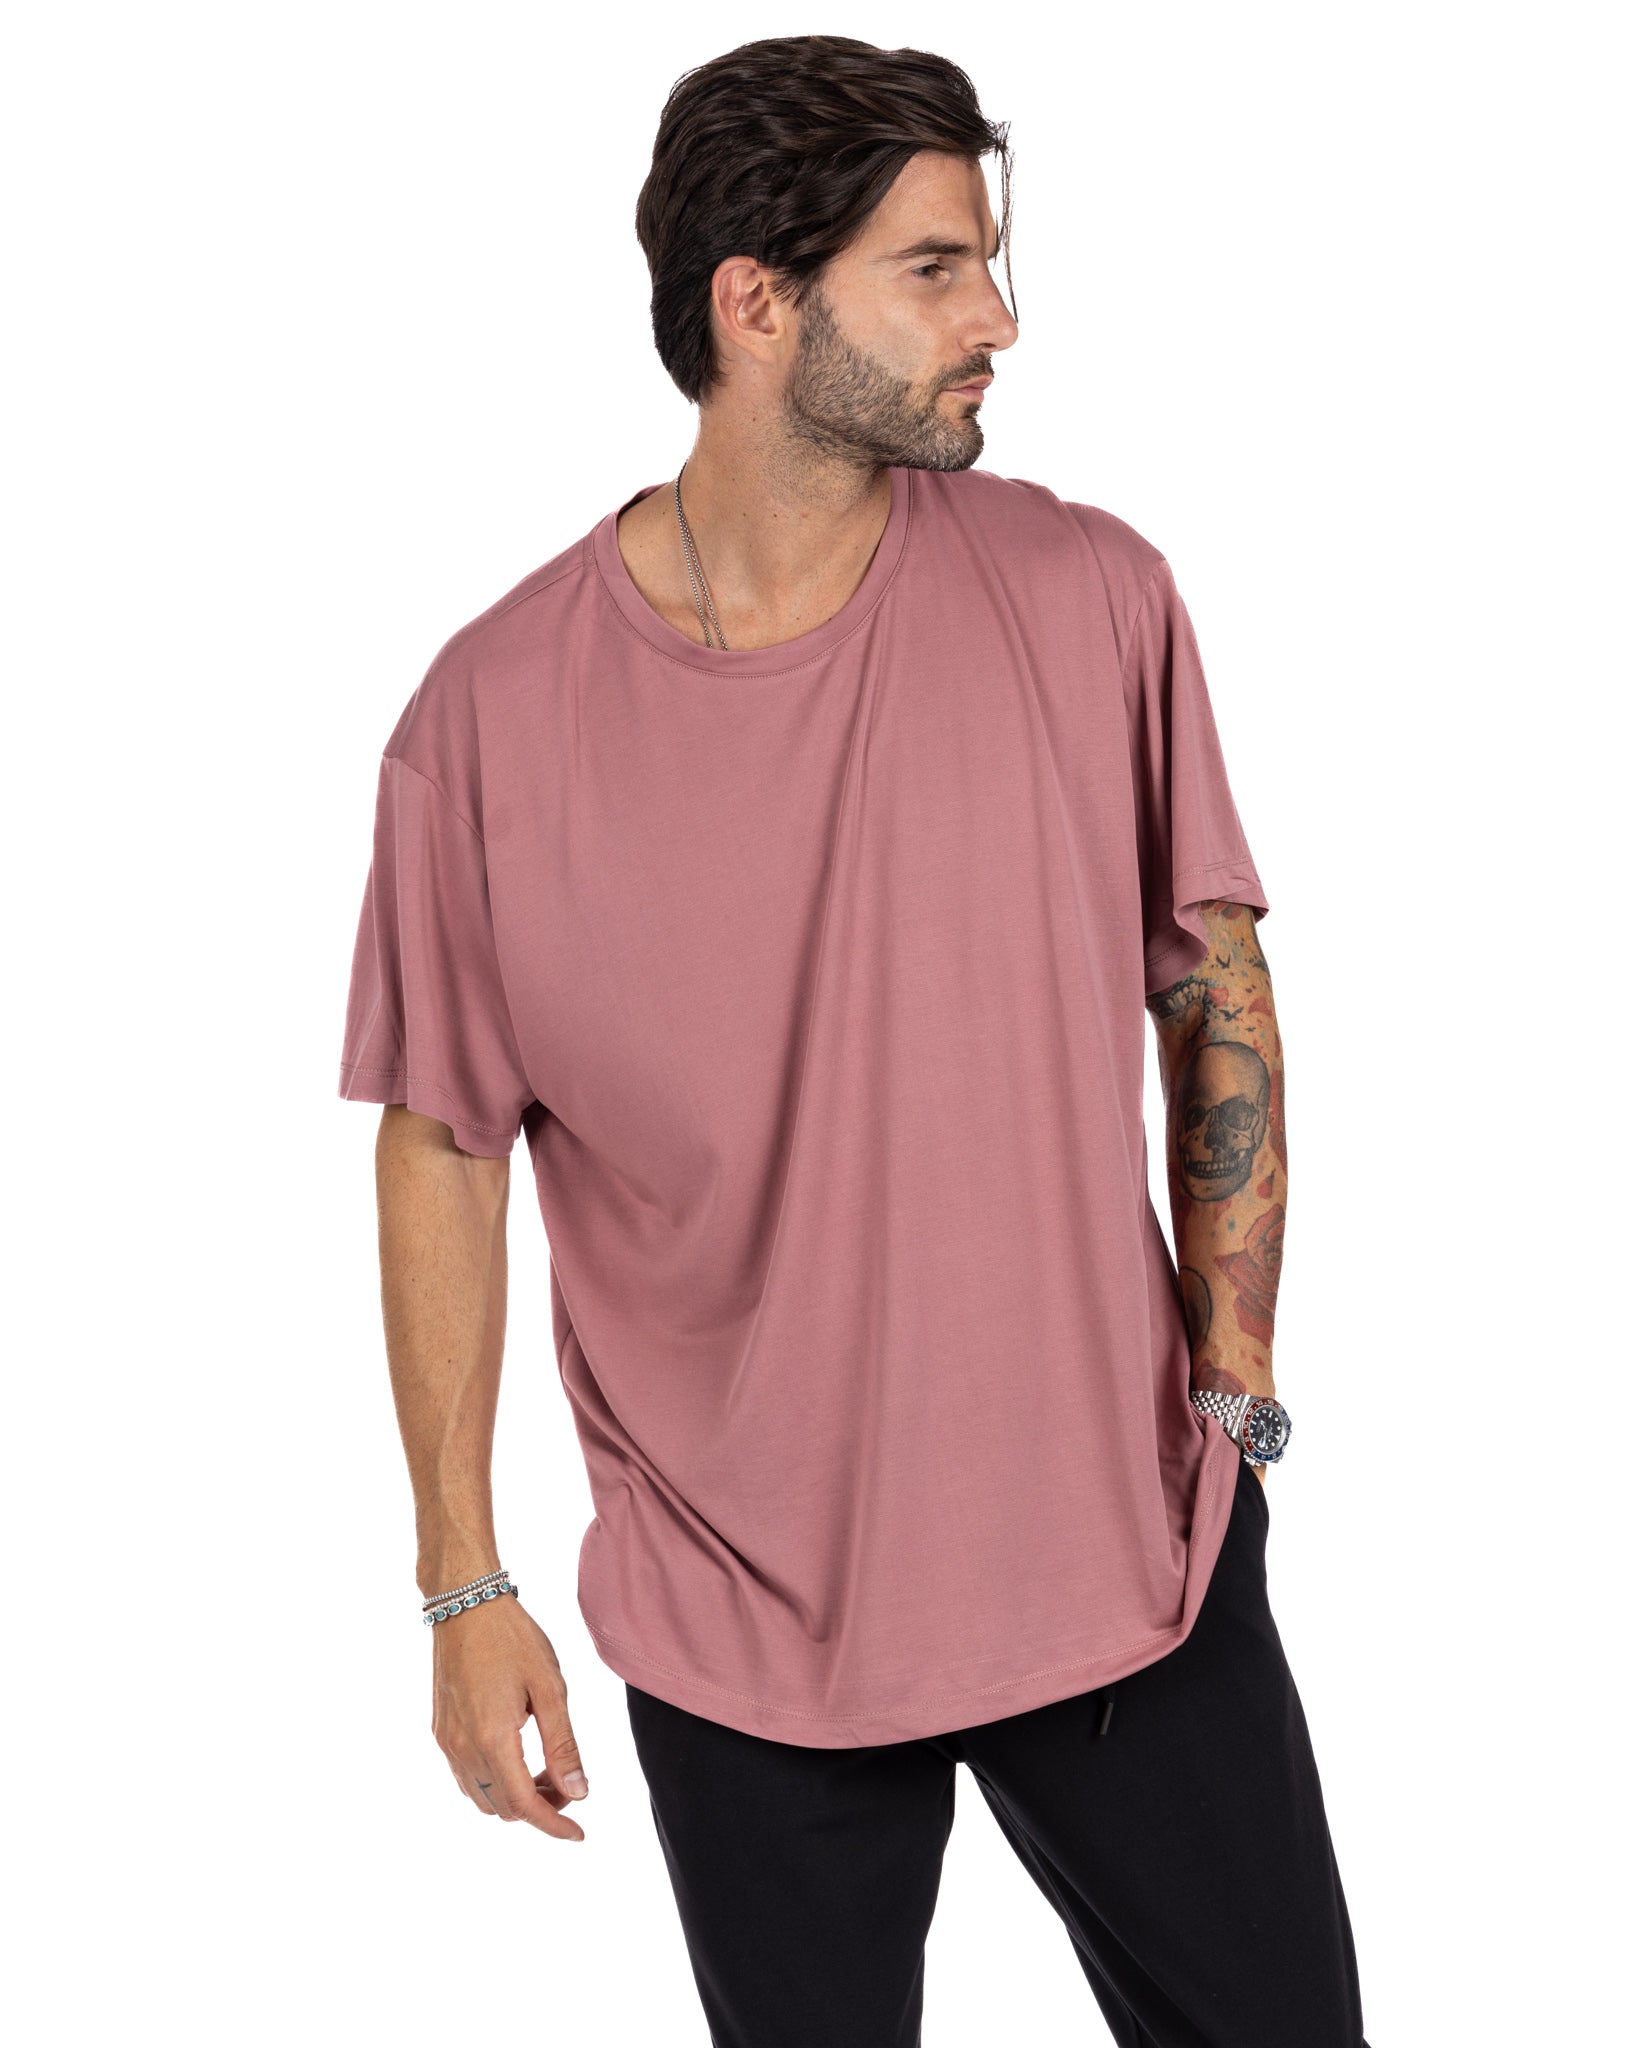 Owen - oversized pink t-shirt